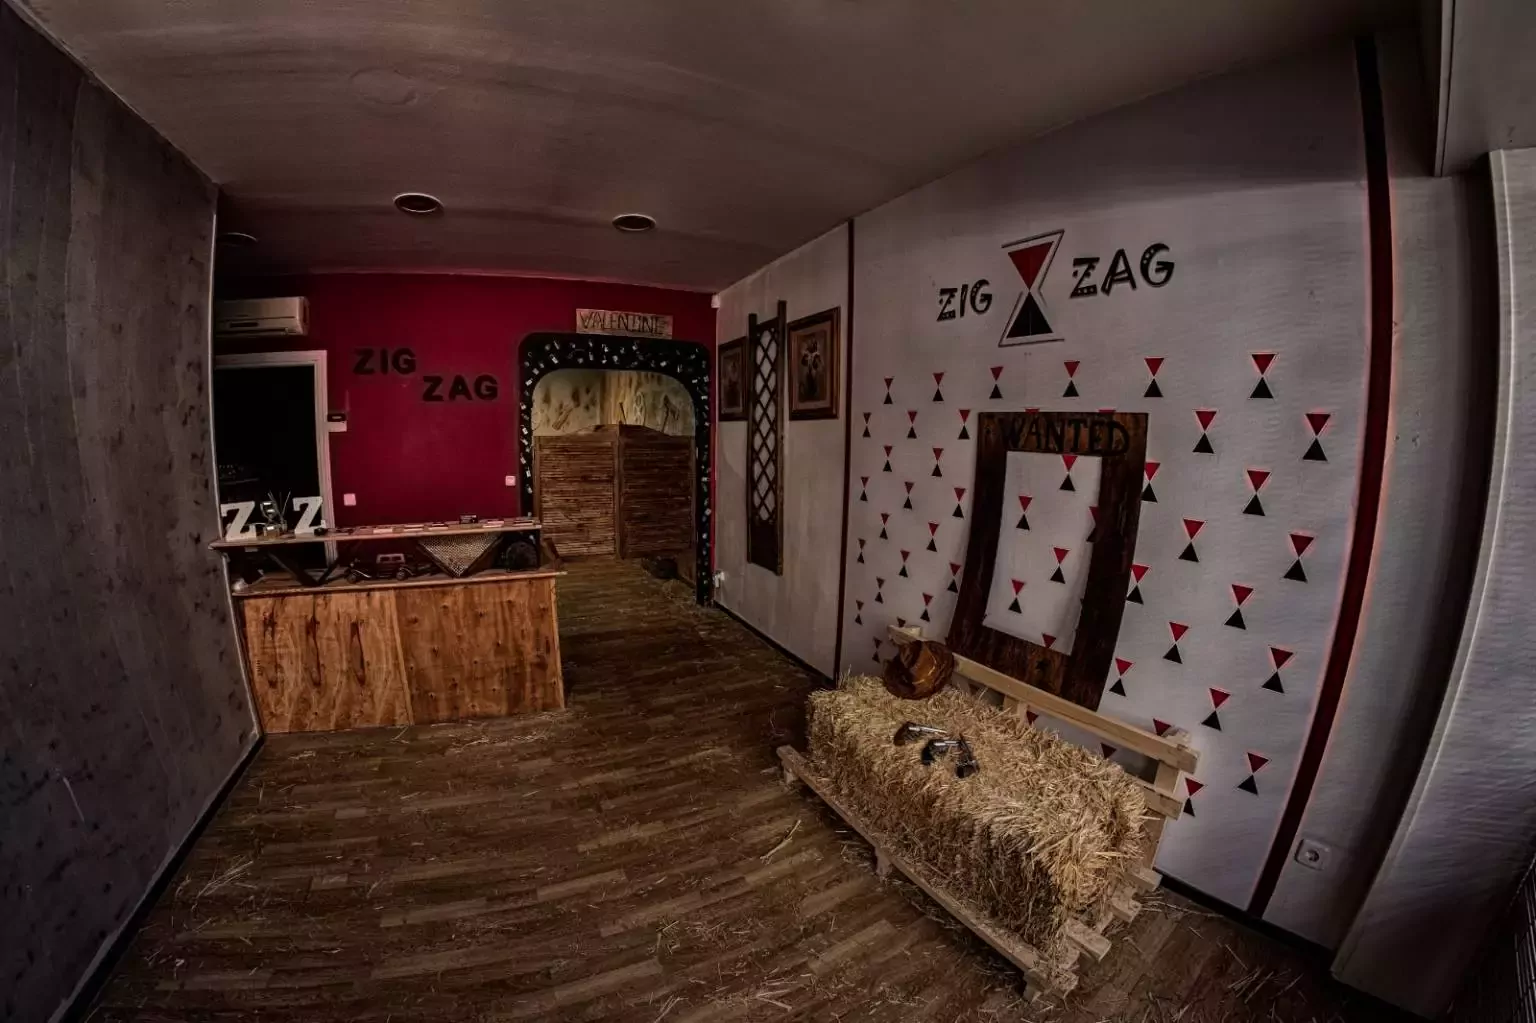 6. Zig Zag  - Sala de Escape en Madrid